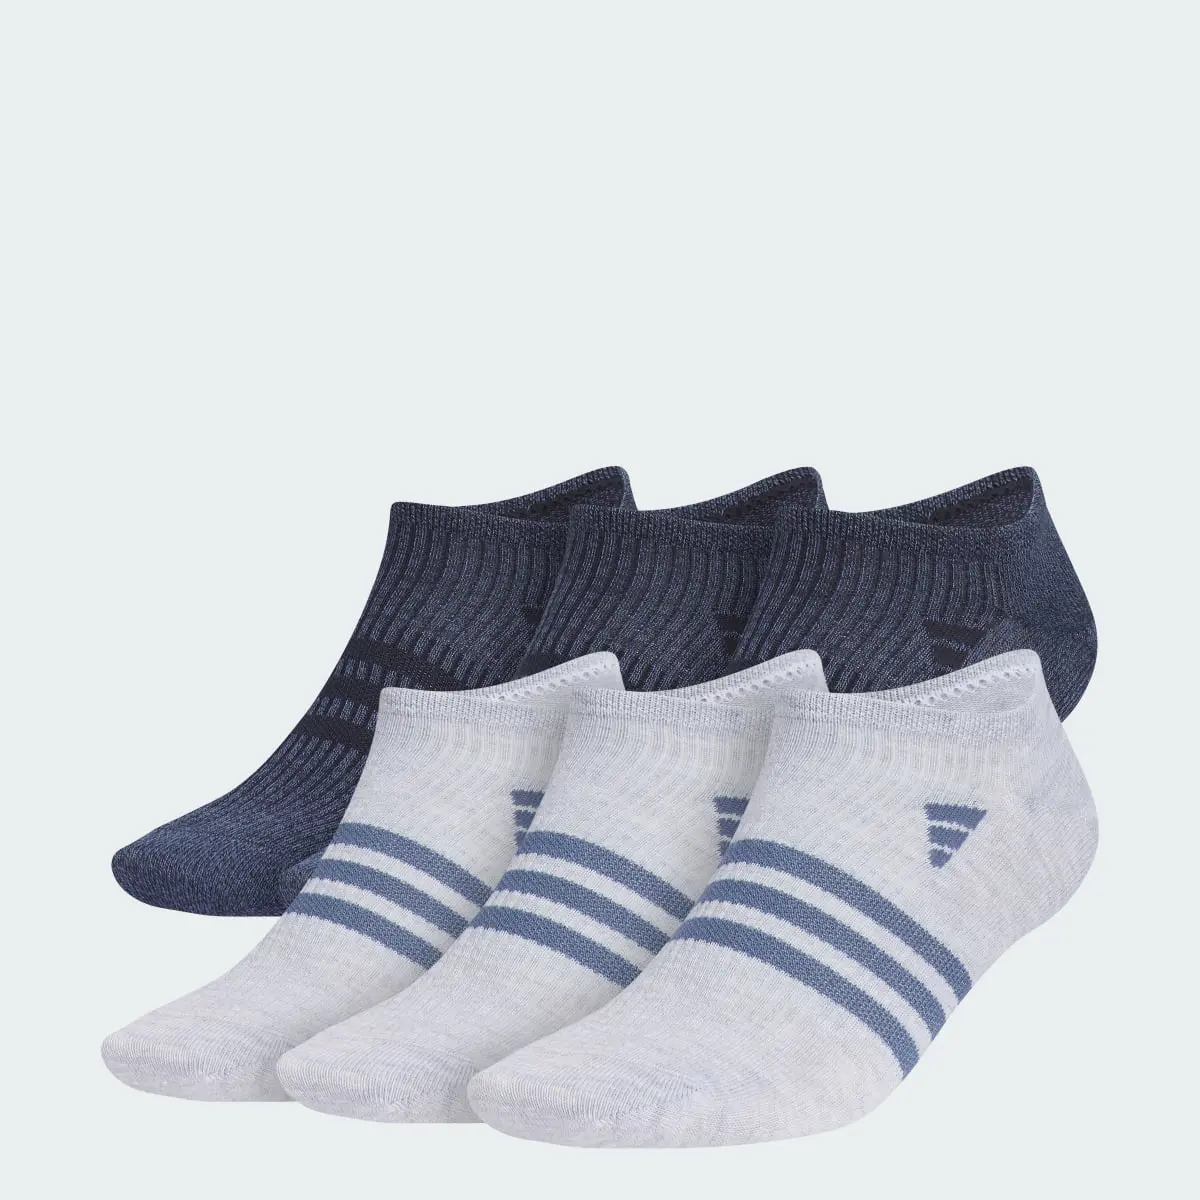 Adidas Superlite 3.0 6-Pack No-Show Socks. 1